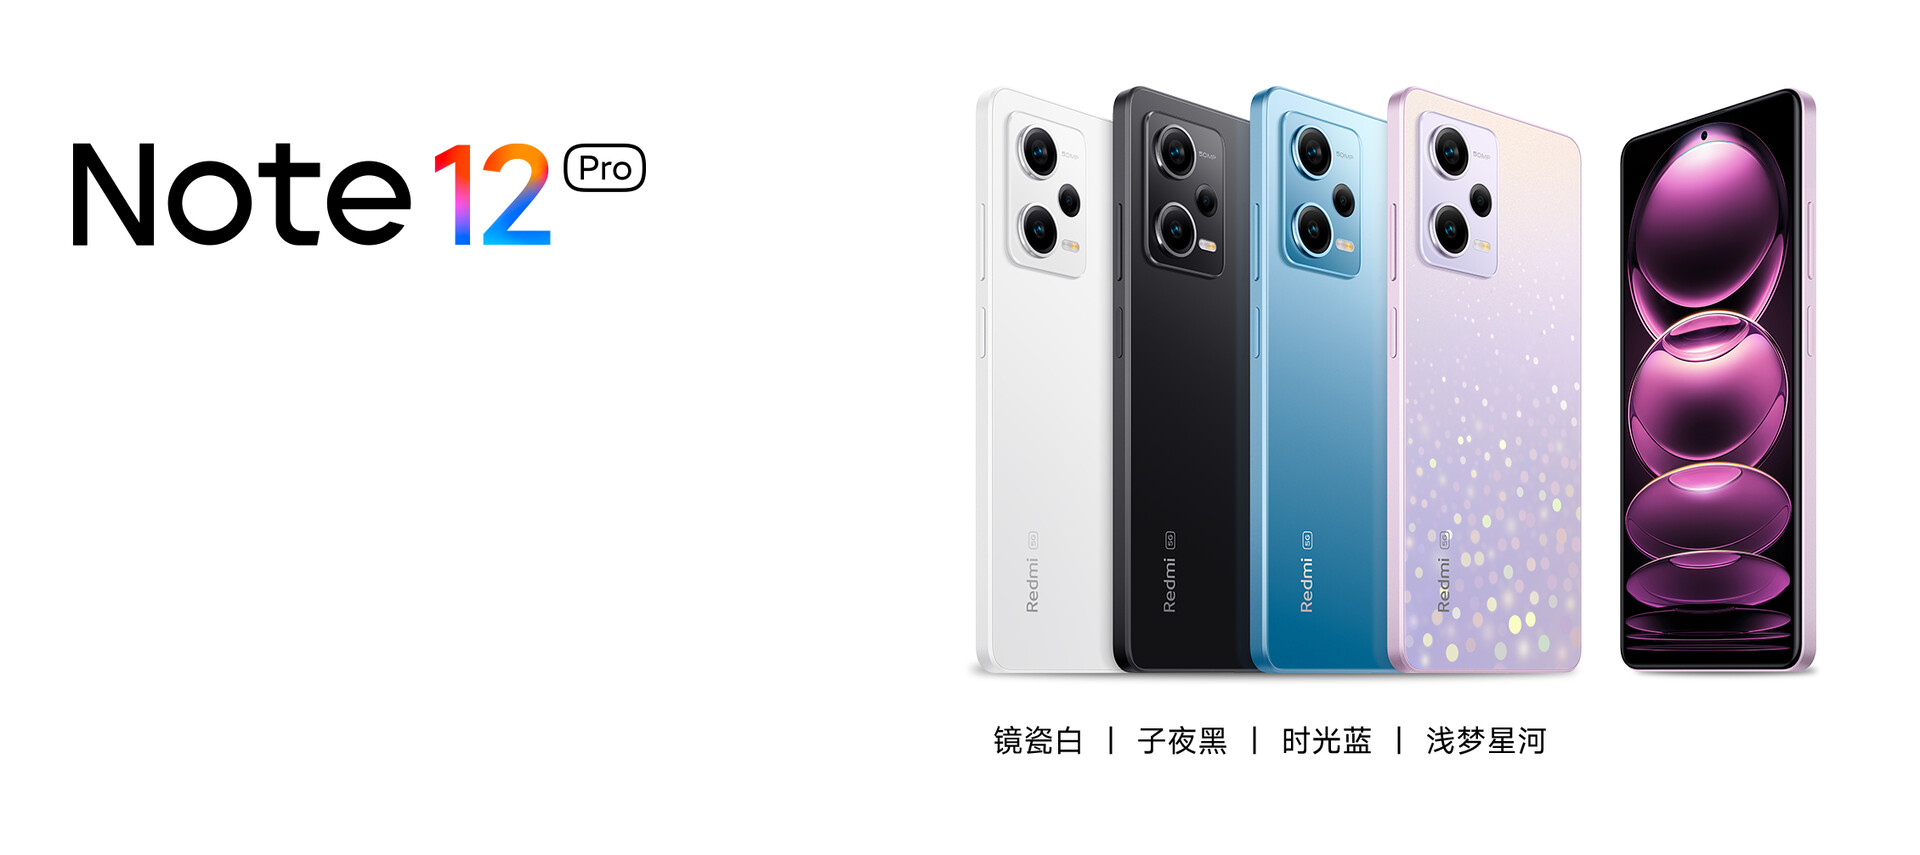 Xiaomi Unveils Redmi Note 12 Pro: Newest Addition to Redmi Note 12